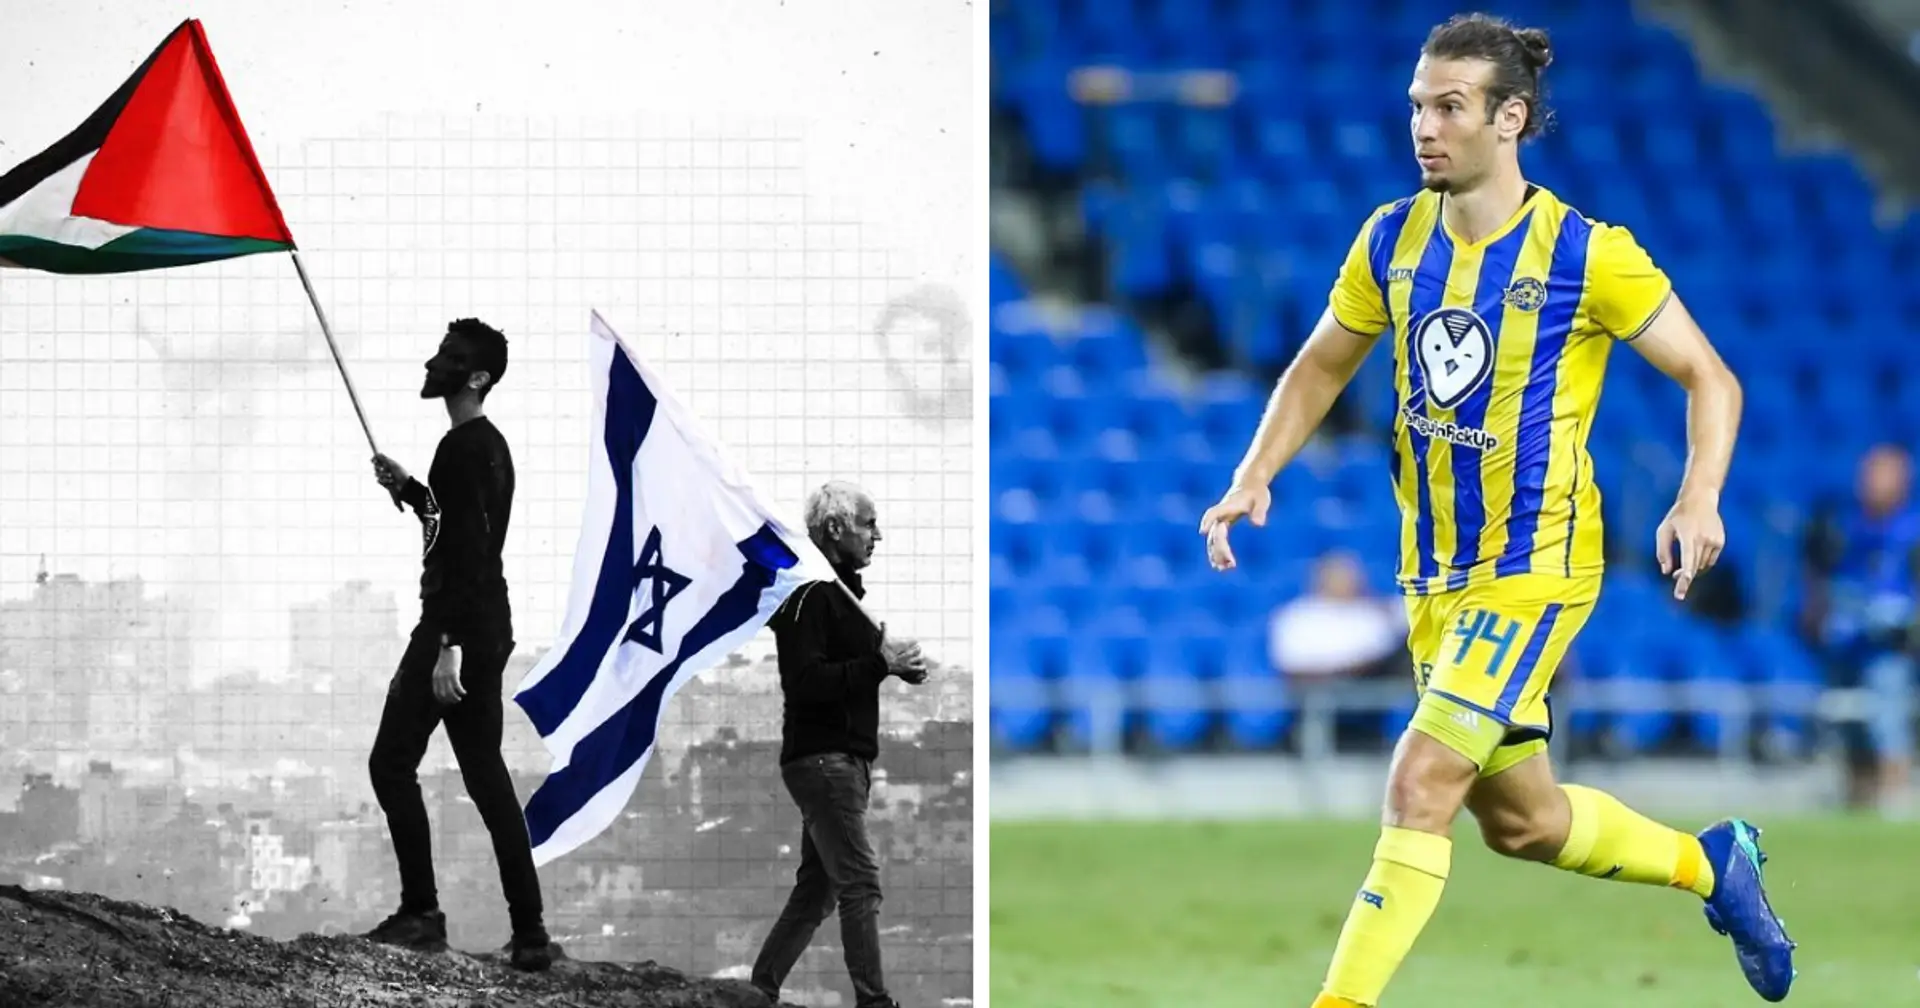 Maccabi-Verteidiger Goldberg sagte, es gebe keine Spannungen zwischen jüdischen und muslimischen Spielern: "Wir sind Menschen, und wir können in Frieden leben"